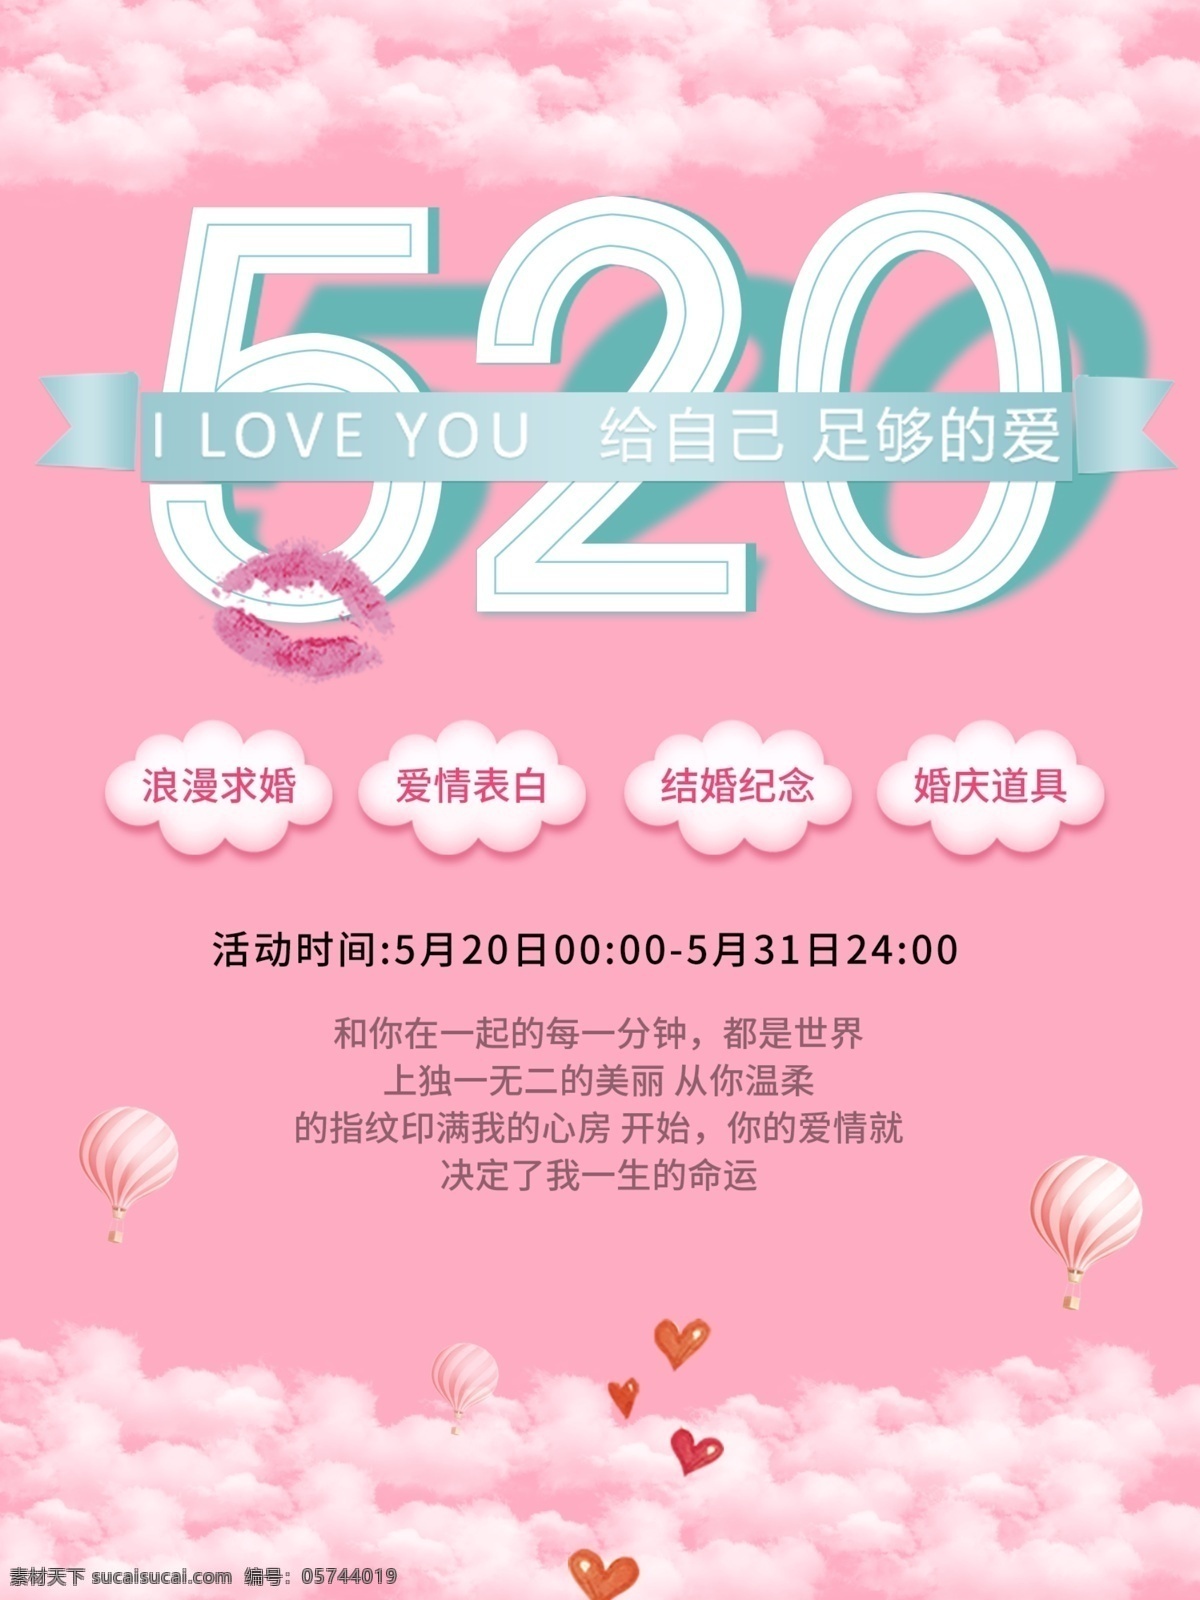 520 节日 促销 折扣 粉色 小 清新 海报 节日促销 唯美 浪漫 字体设计